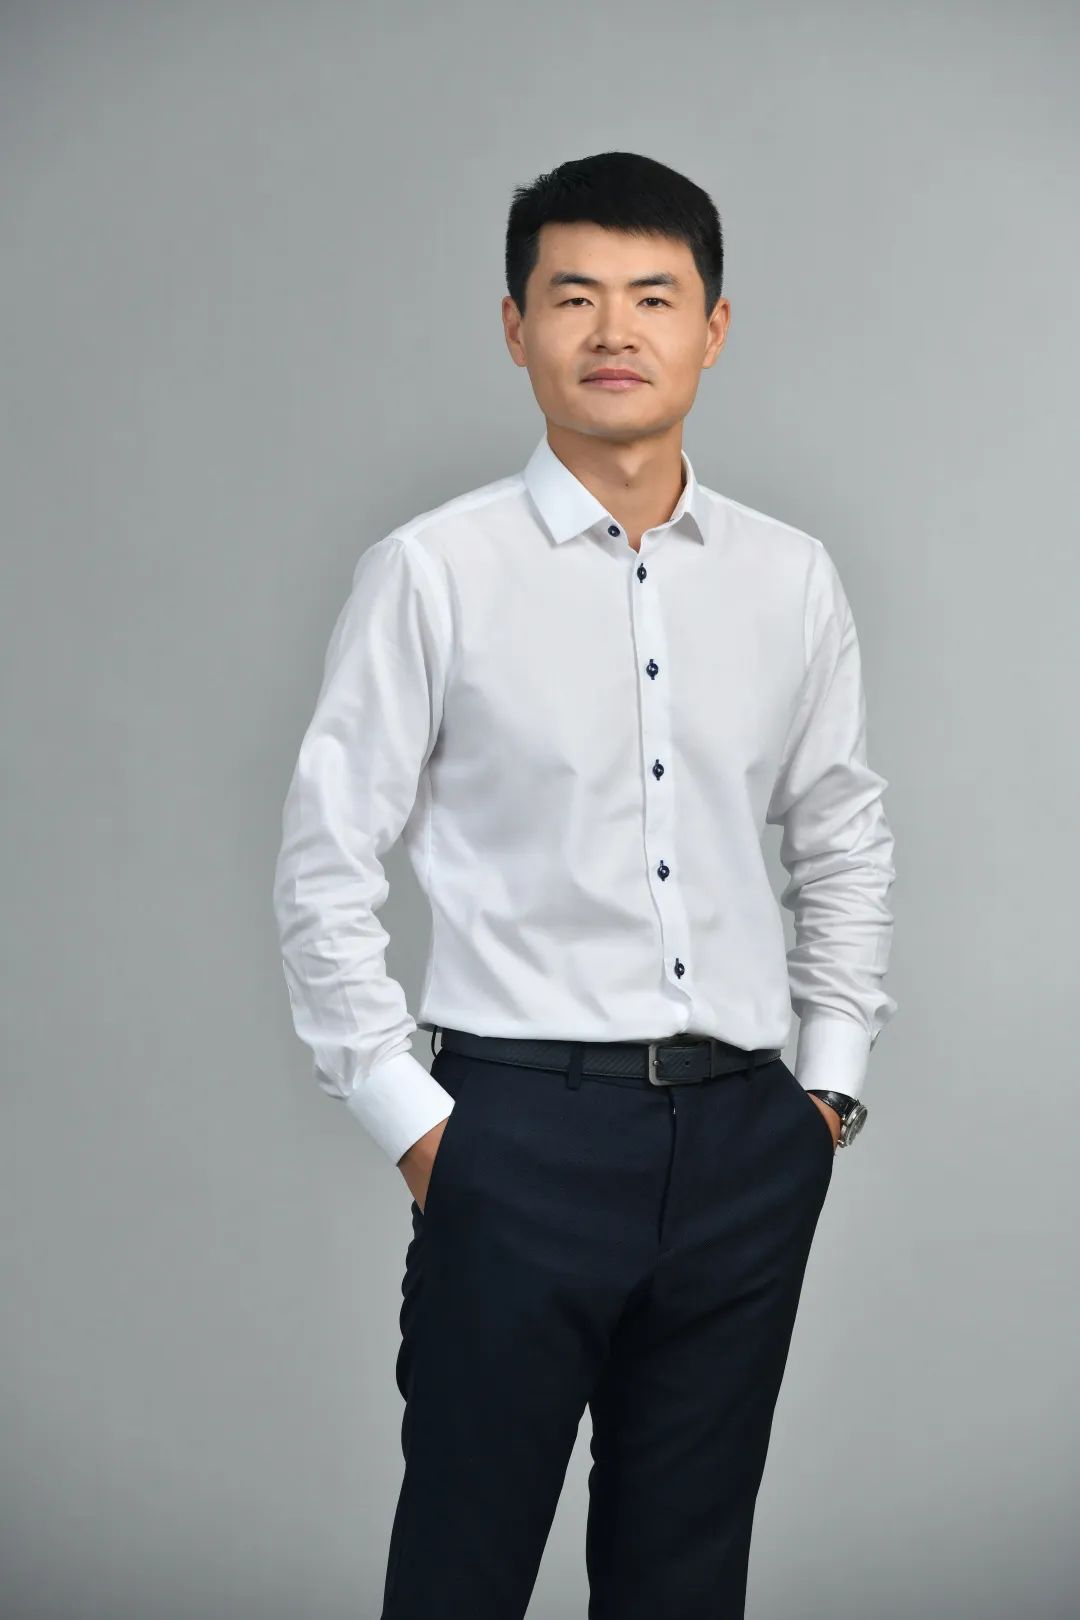 第十七届杭州市优秀企业家——象限科技总经理孙明